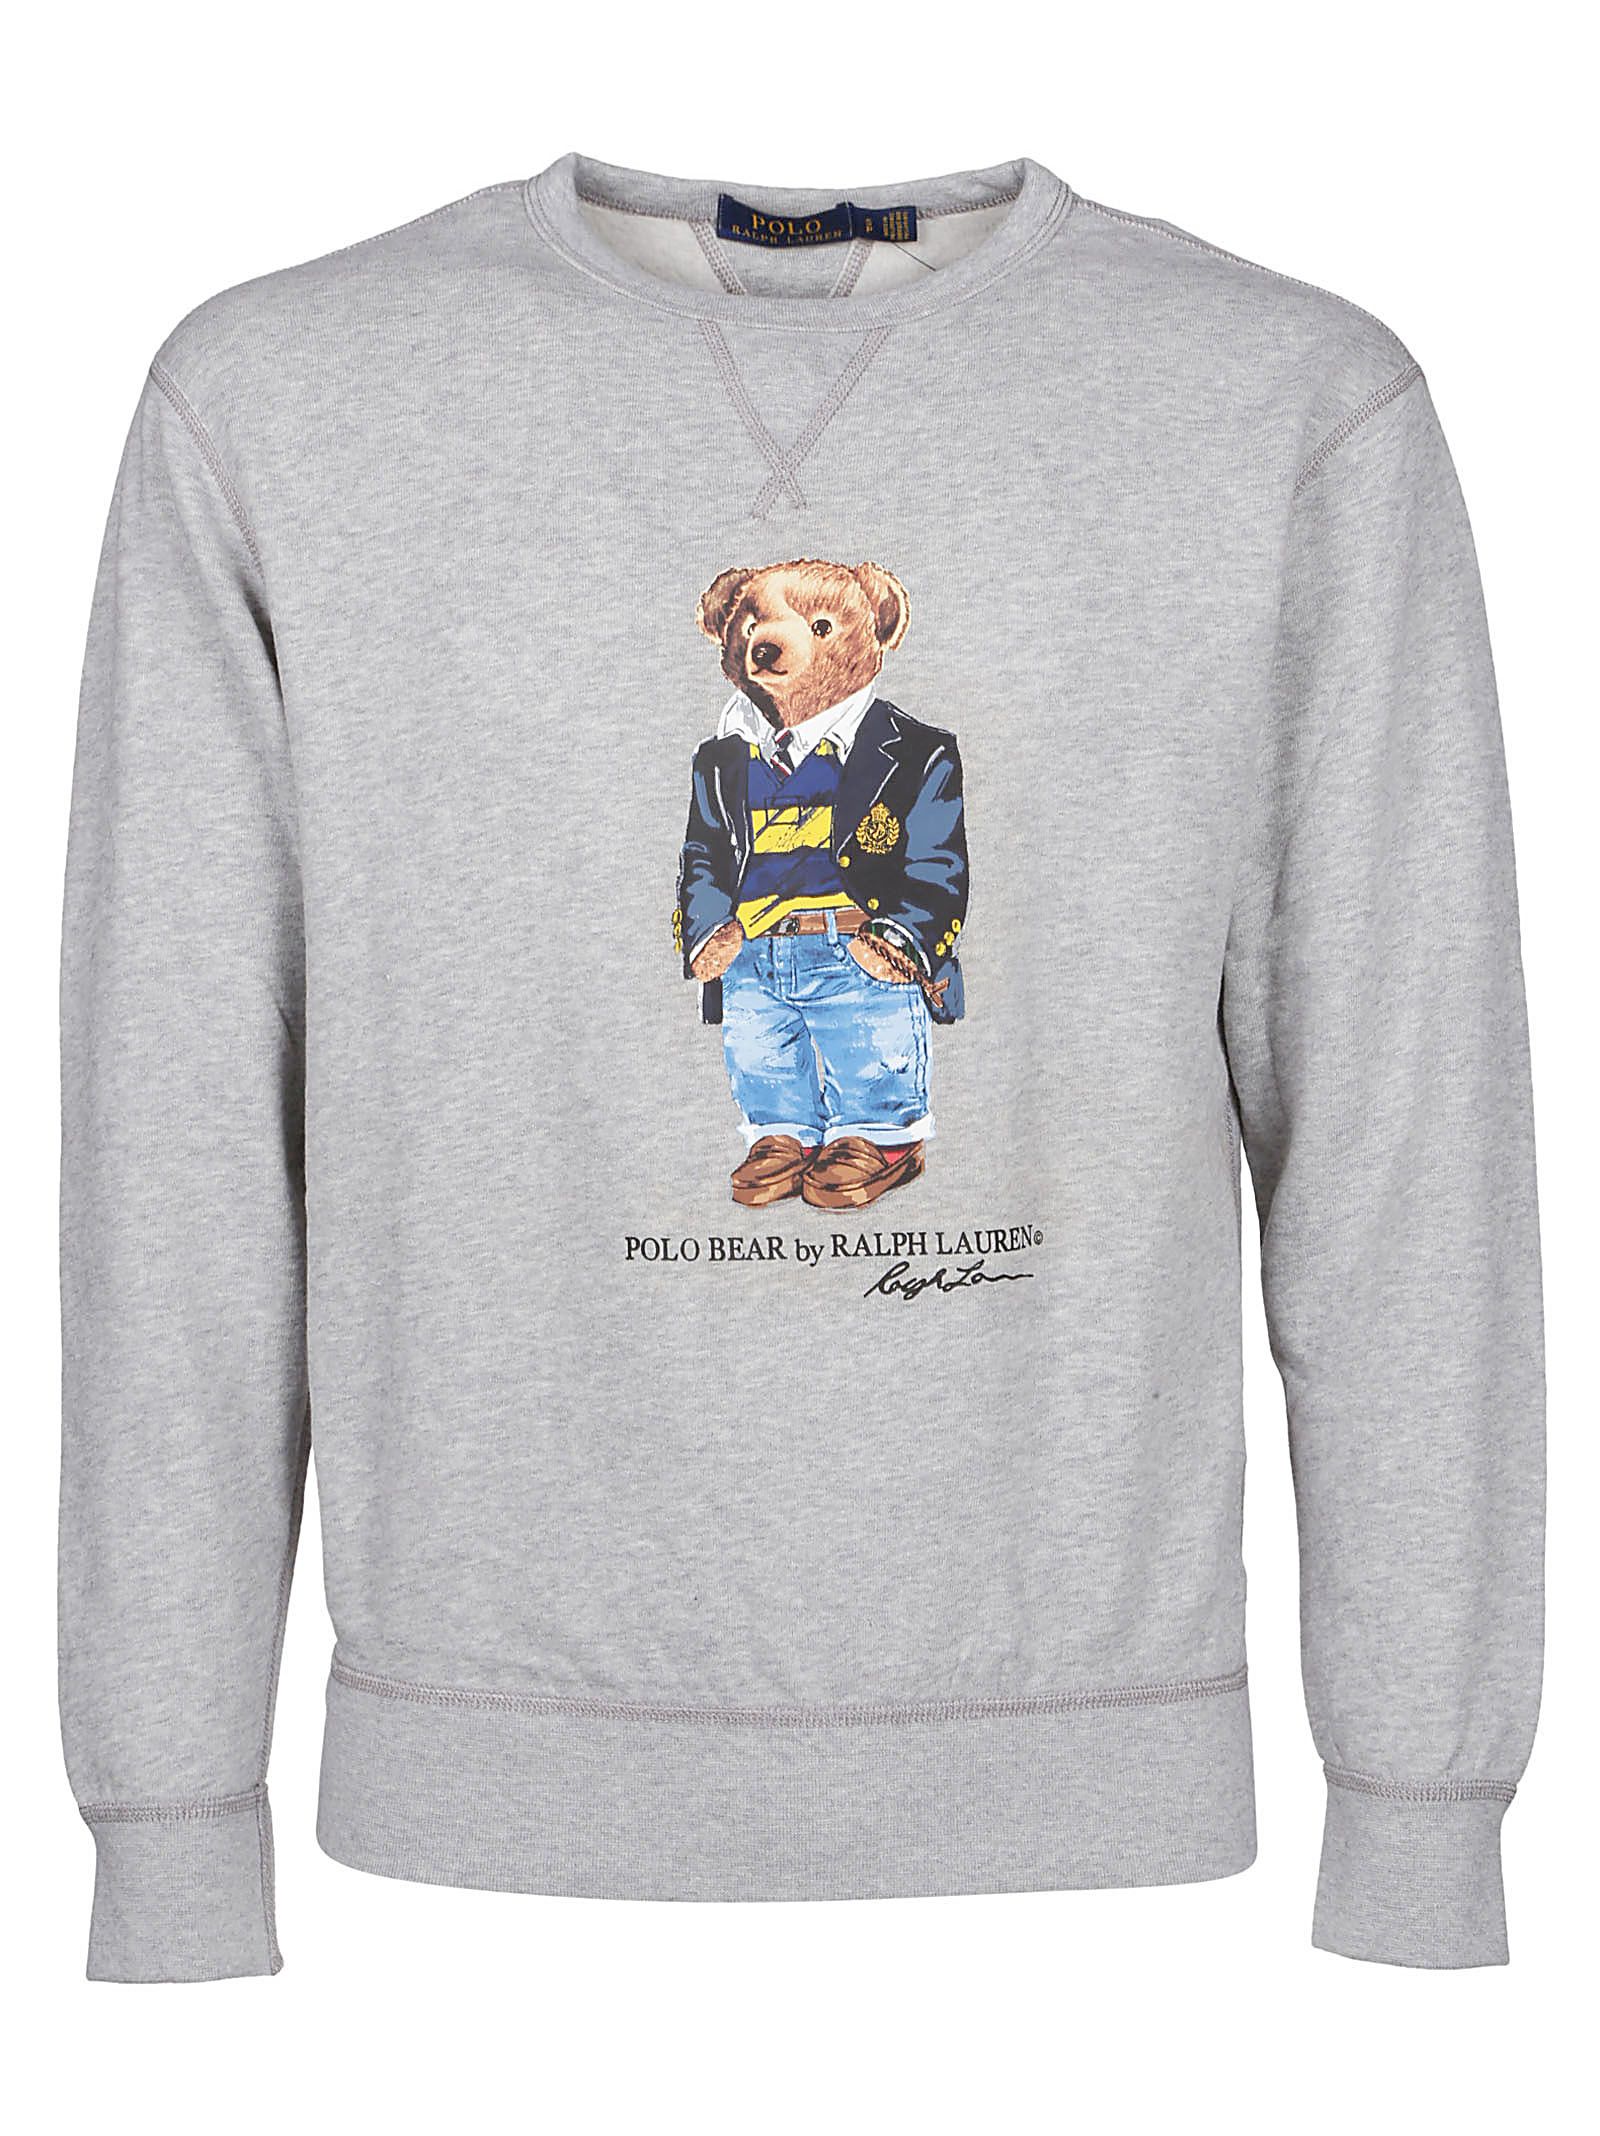 Ralph Lauren Ralph Lauren Polo Bear Sweatshirt - Grey Heather ...